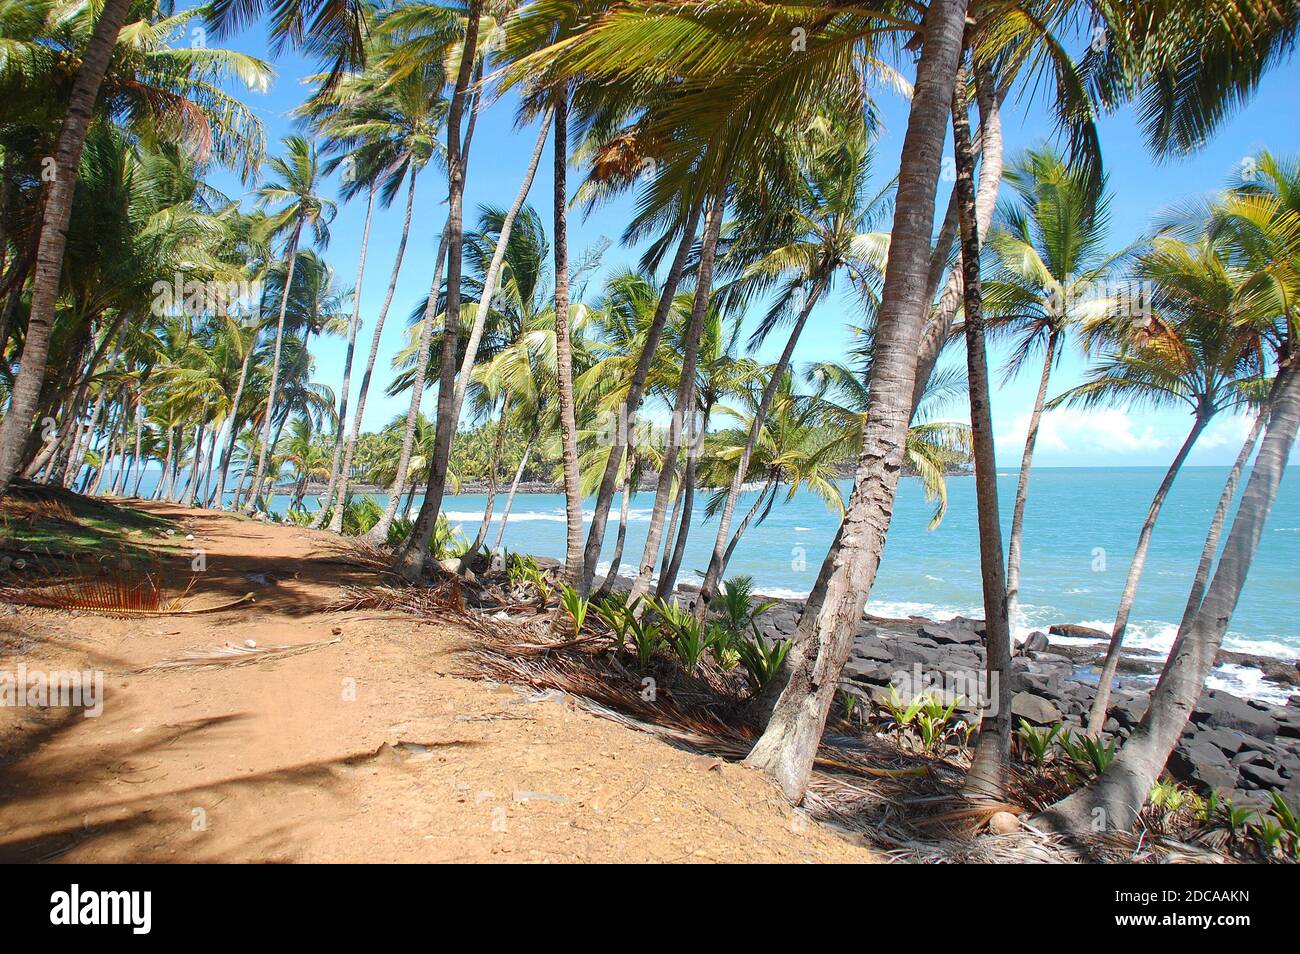 Amérique du Sud, Guyana, Kourou, le sentier côtier de l'île royale bordé de magnifiques cococotiers faisant face à l'océan Atlantique et à l'île du diable. Banque D'Images